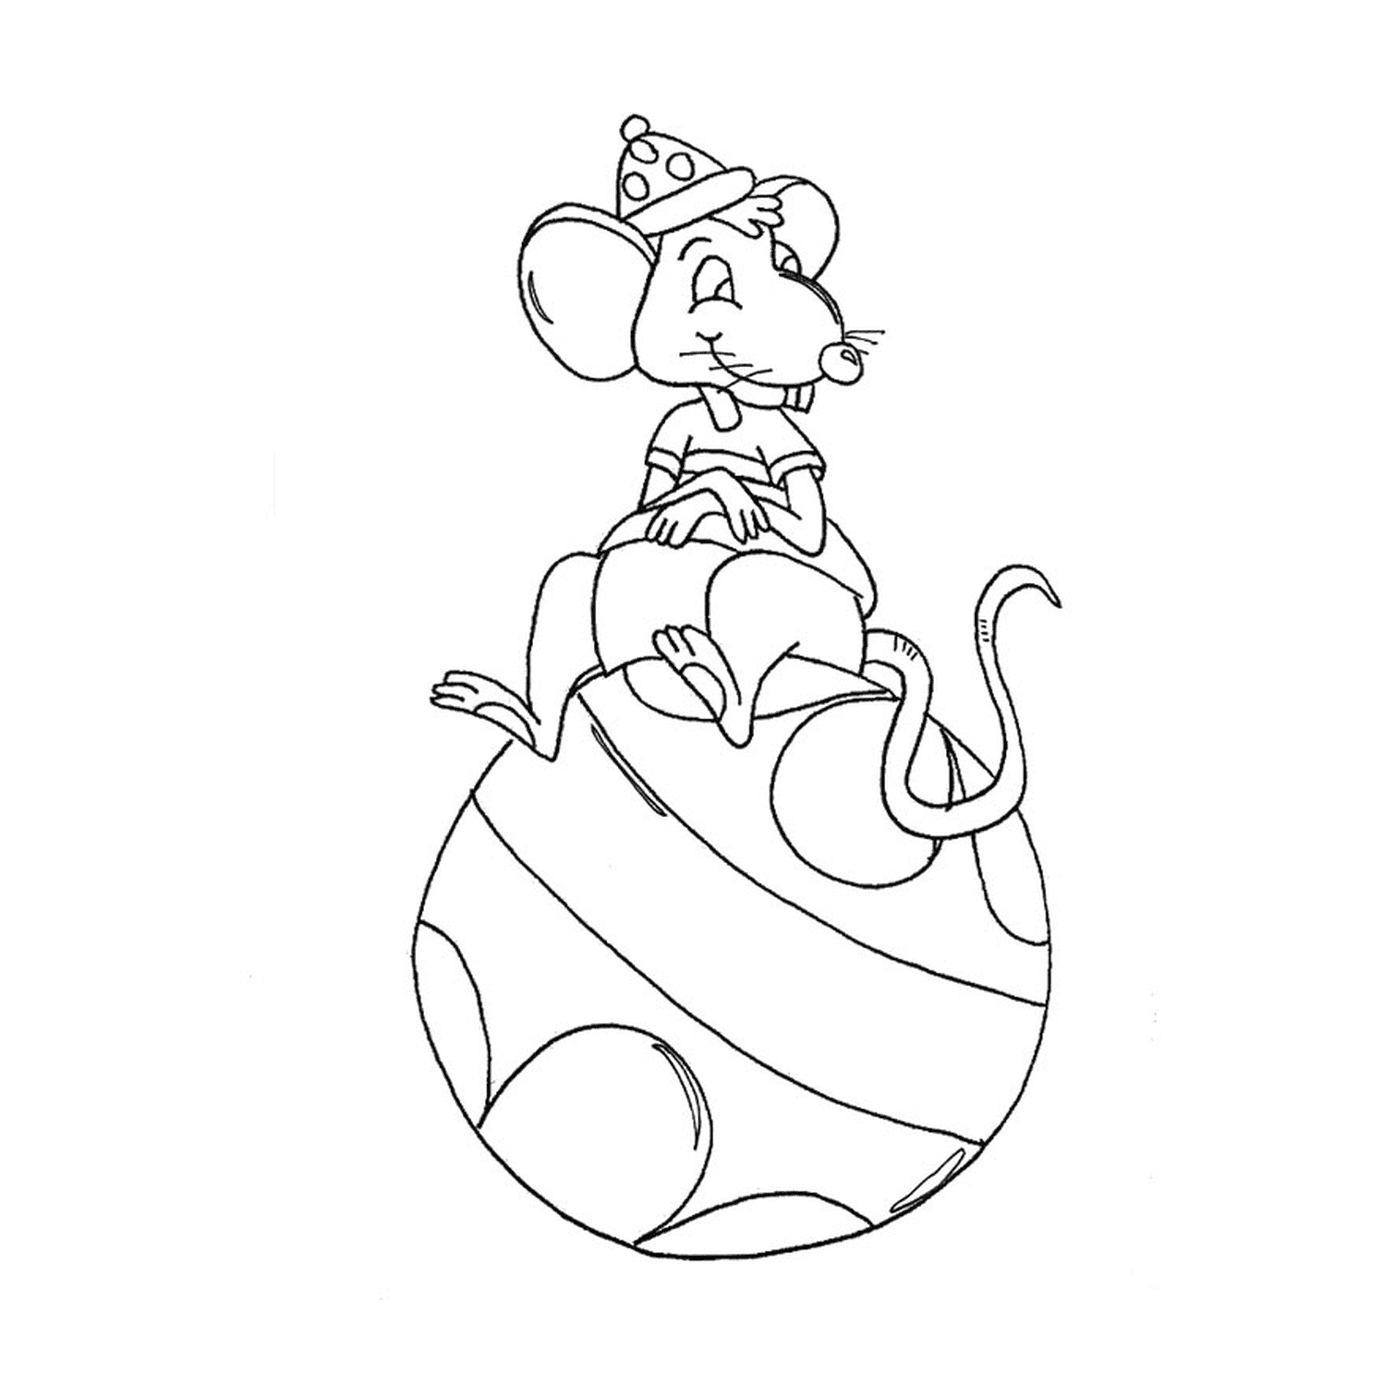  Um rato sentado em um balão 